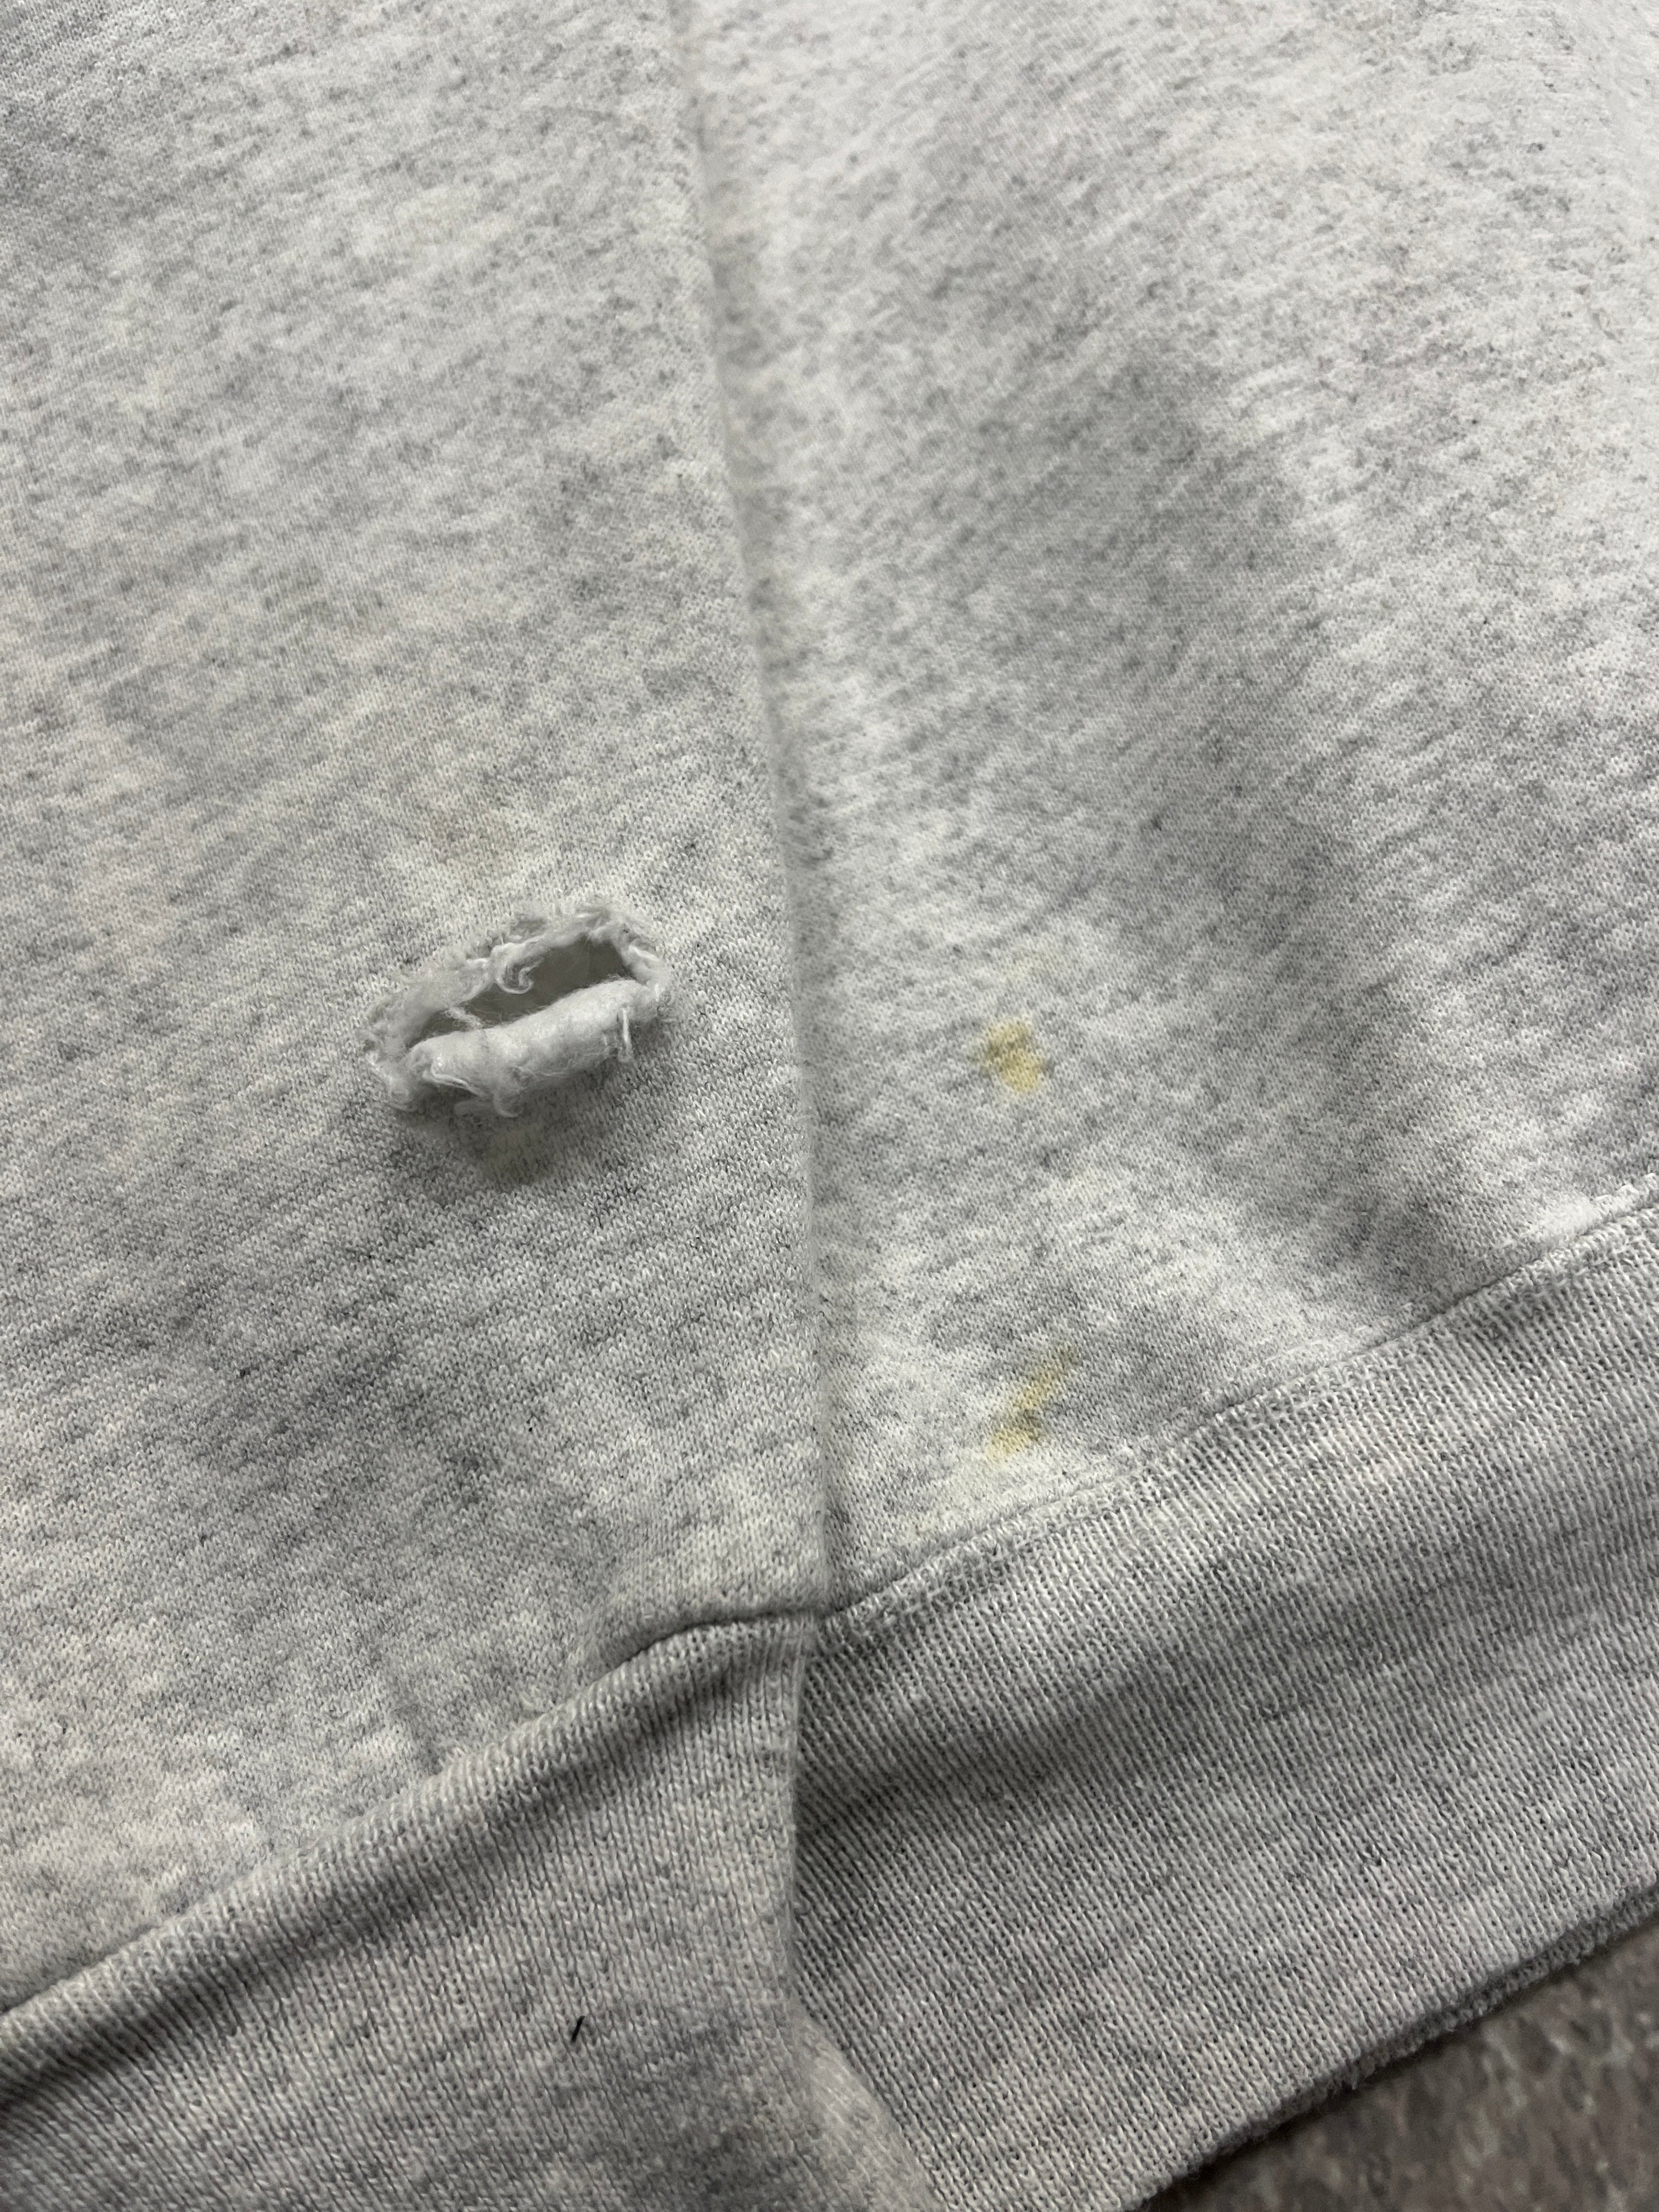 Vintage Blank Sweater Grey // Large - RHAGHOUSE VINTAGE